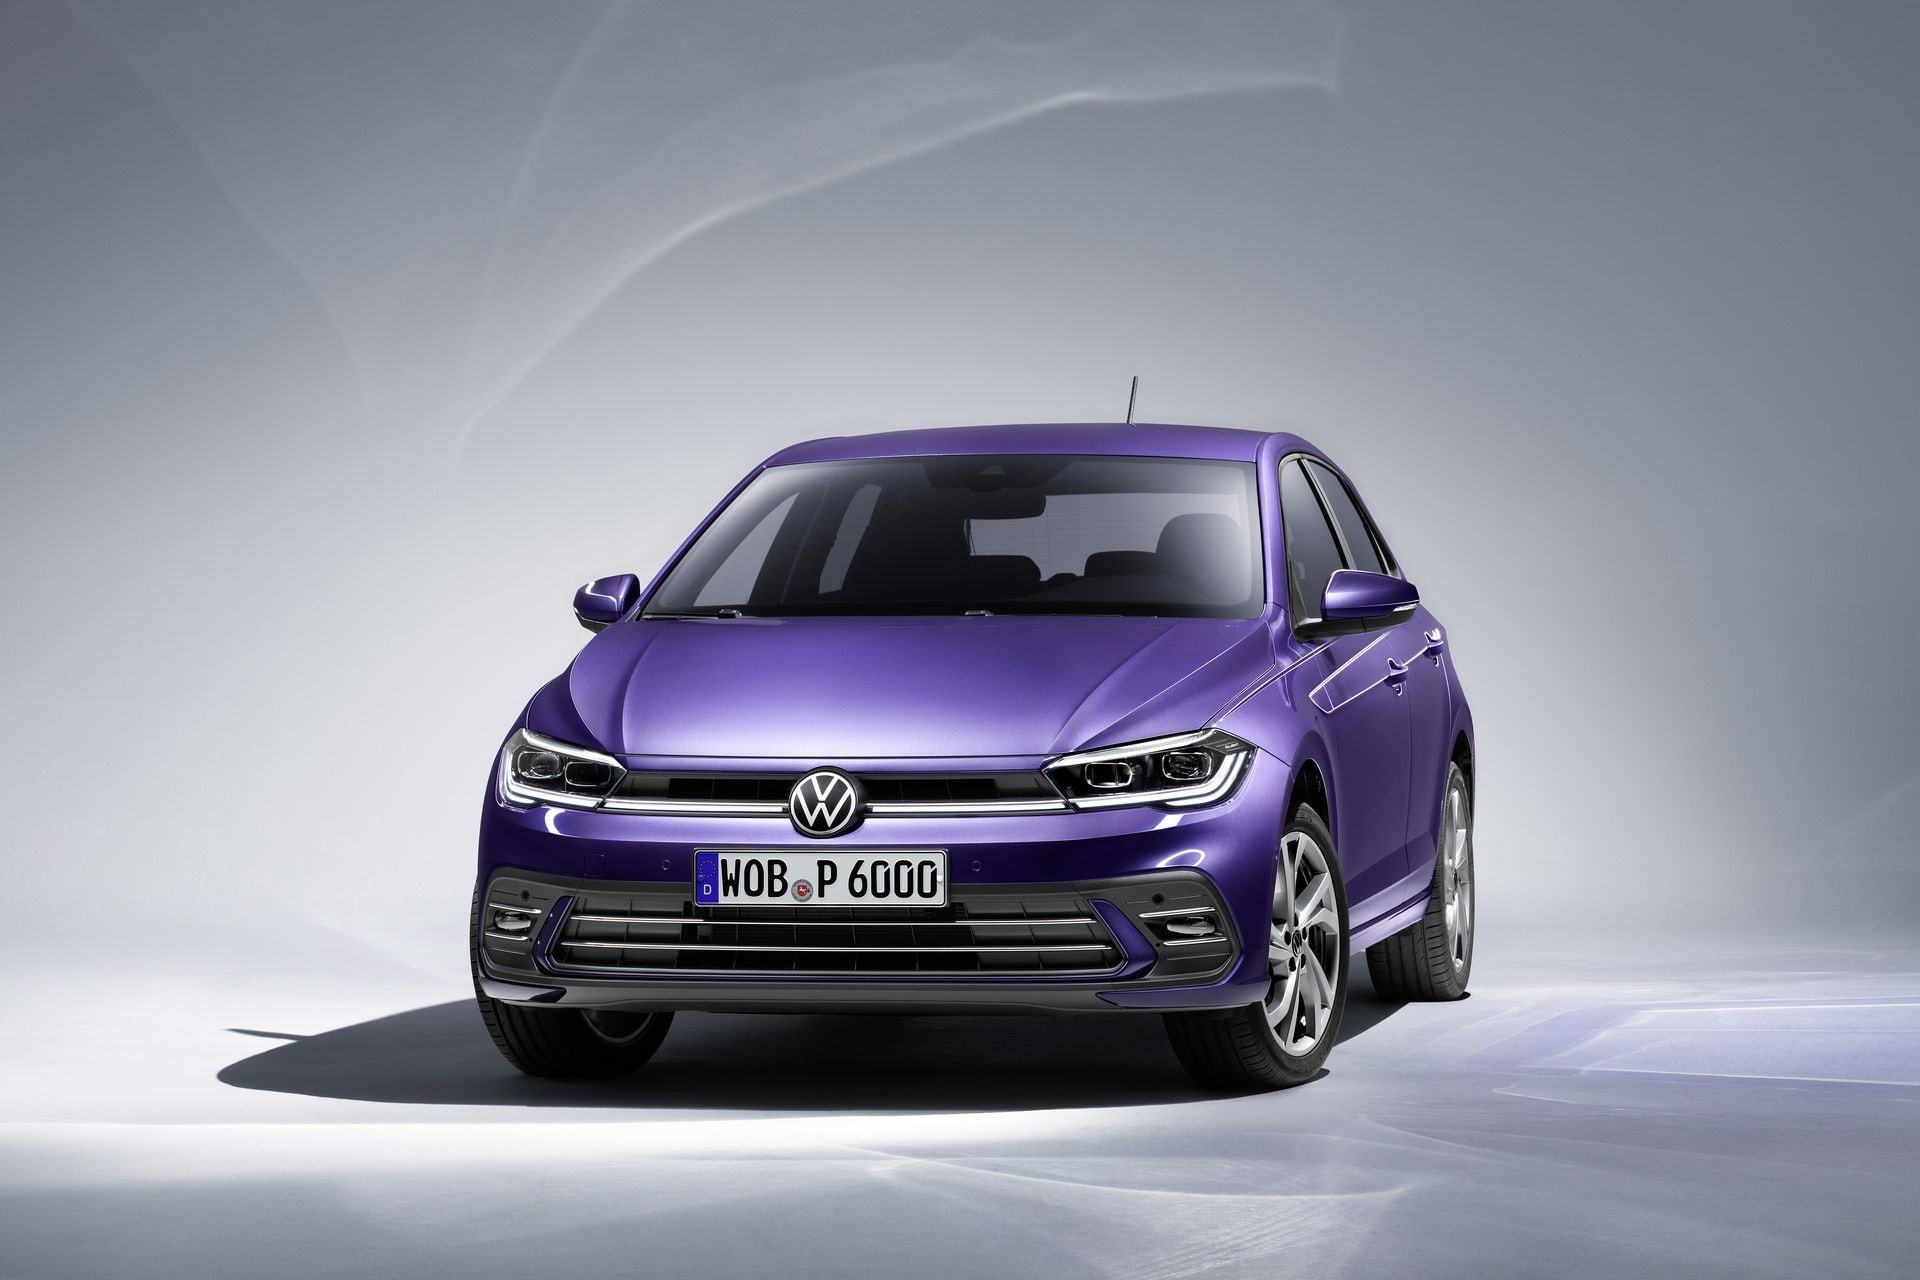 Vista frontal del Volkswagen Polo resaltando su diseño moderno y compacto.